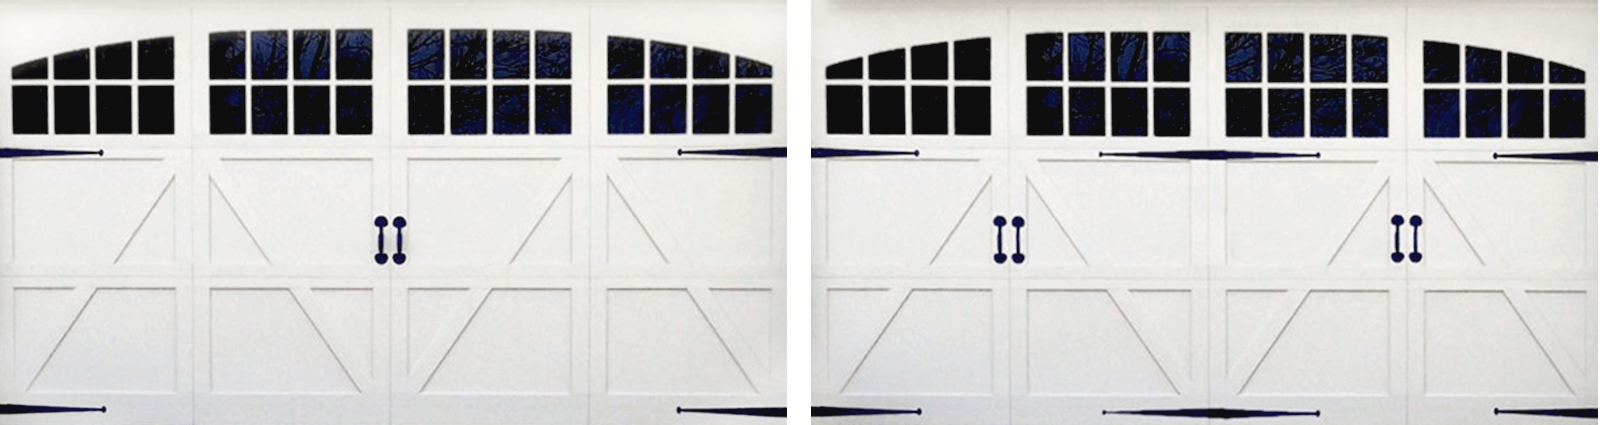 Decorative Garage Door Hardware, Fake Garage Door Hinges And Handles